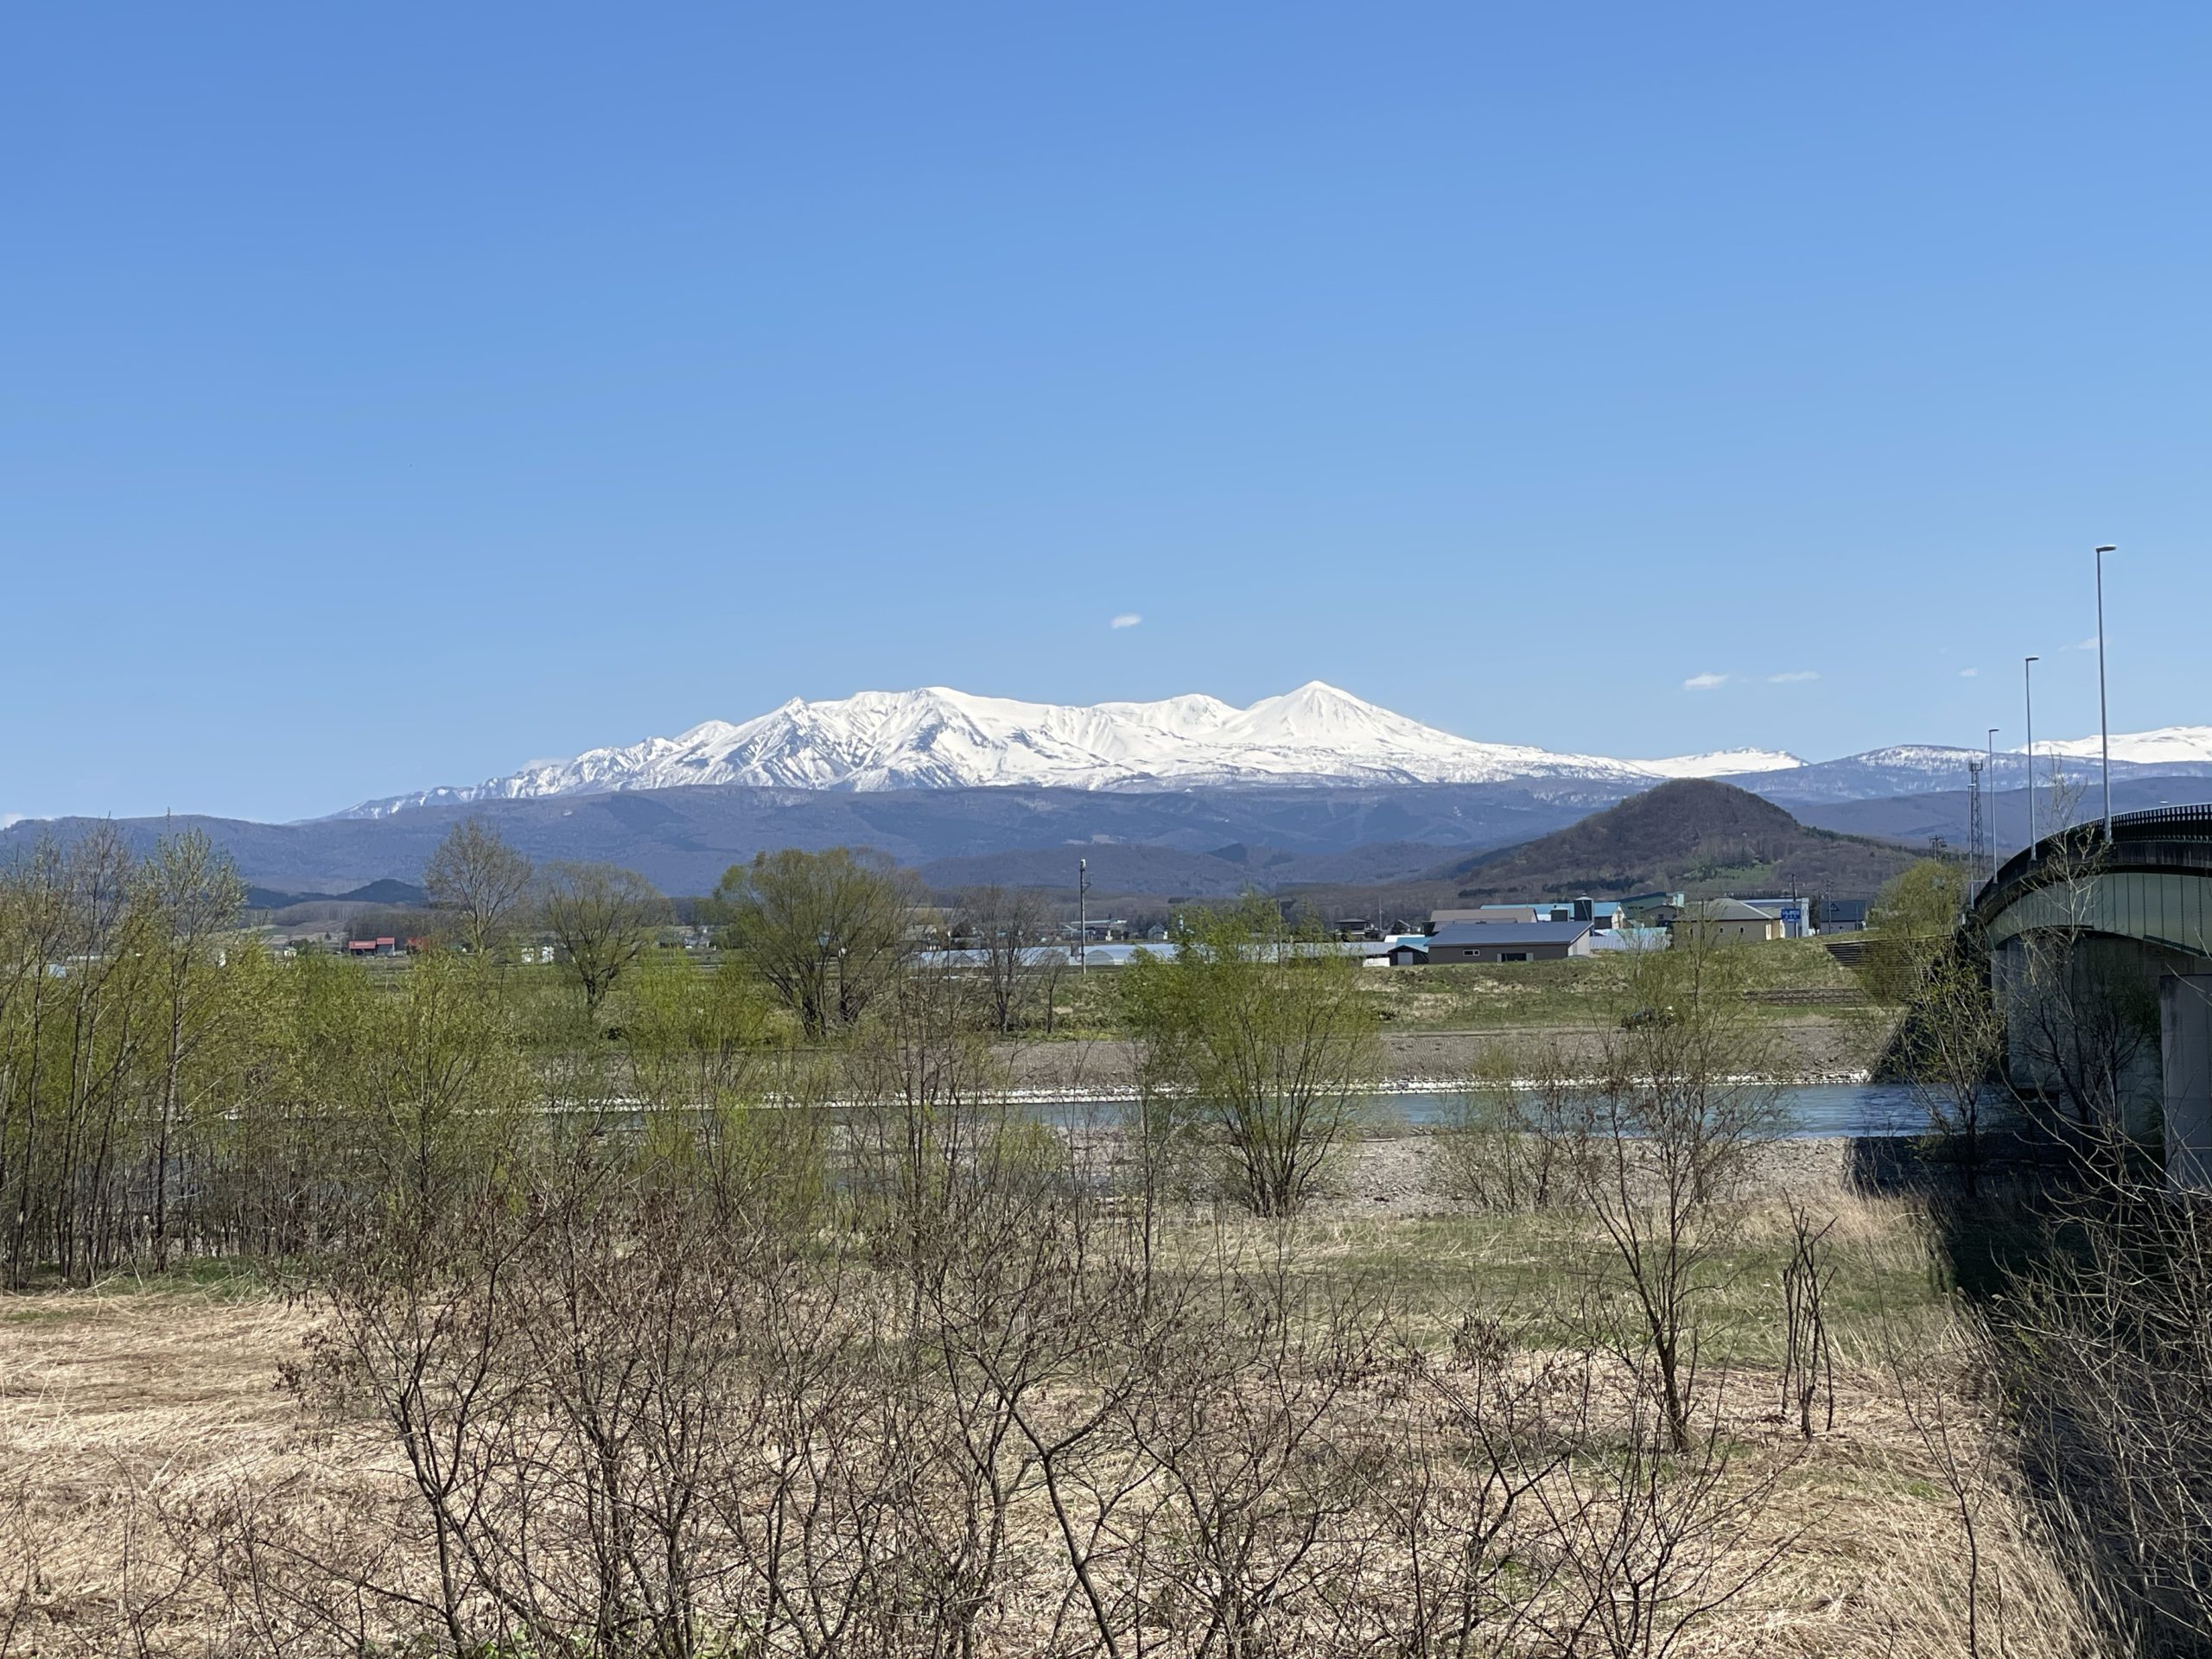 『世界一大雪山が綺麗に見える町』から見た大雪山-比布町内から見た風景|社長のブログ | 大熊養鶏場